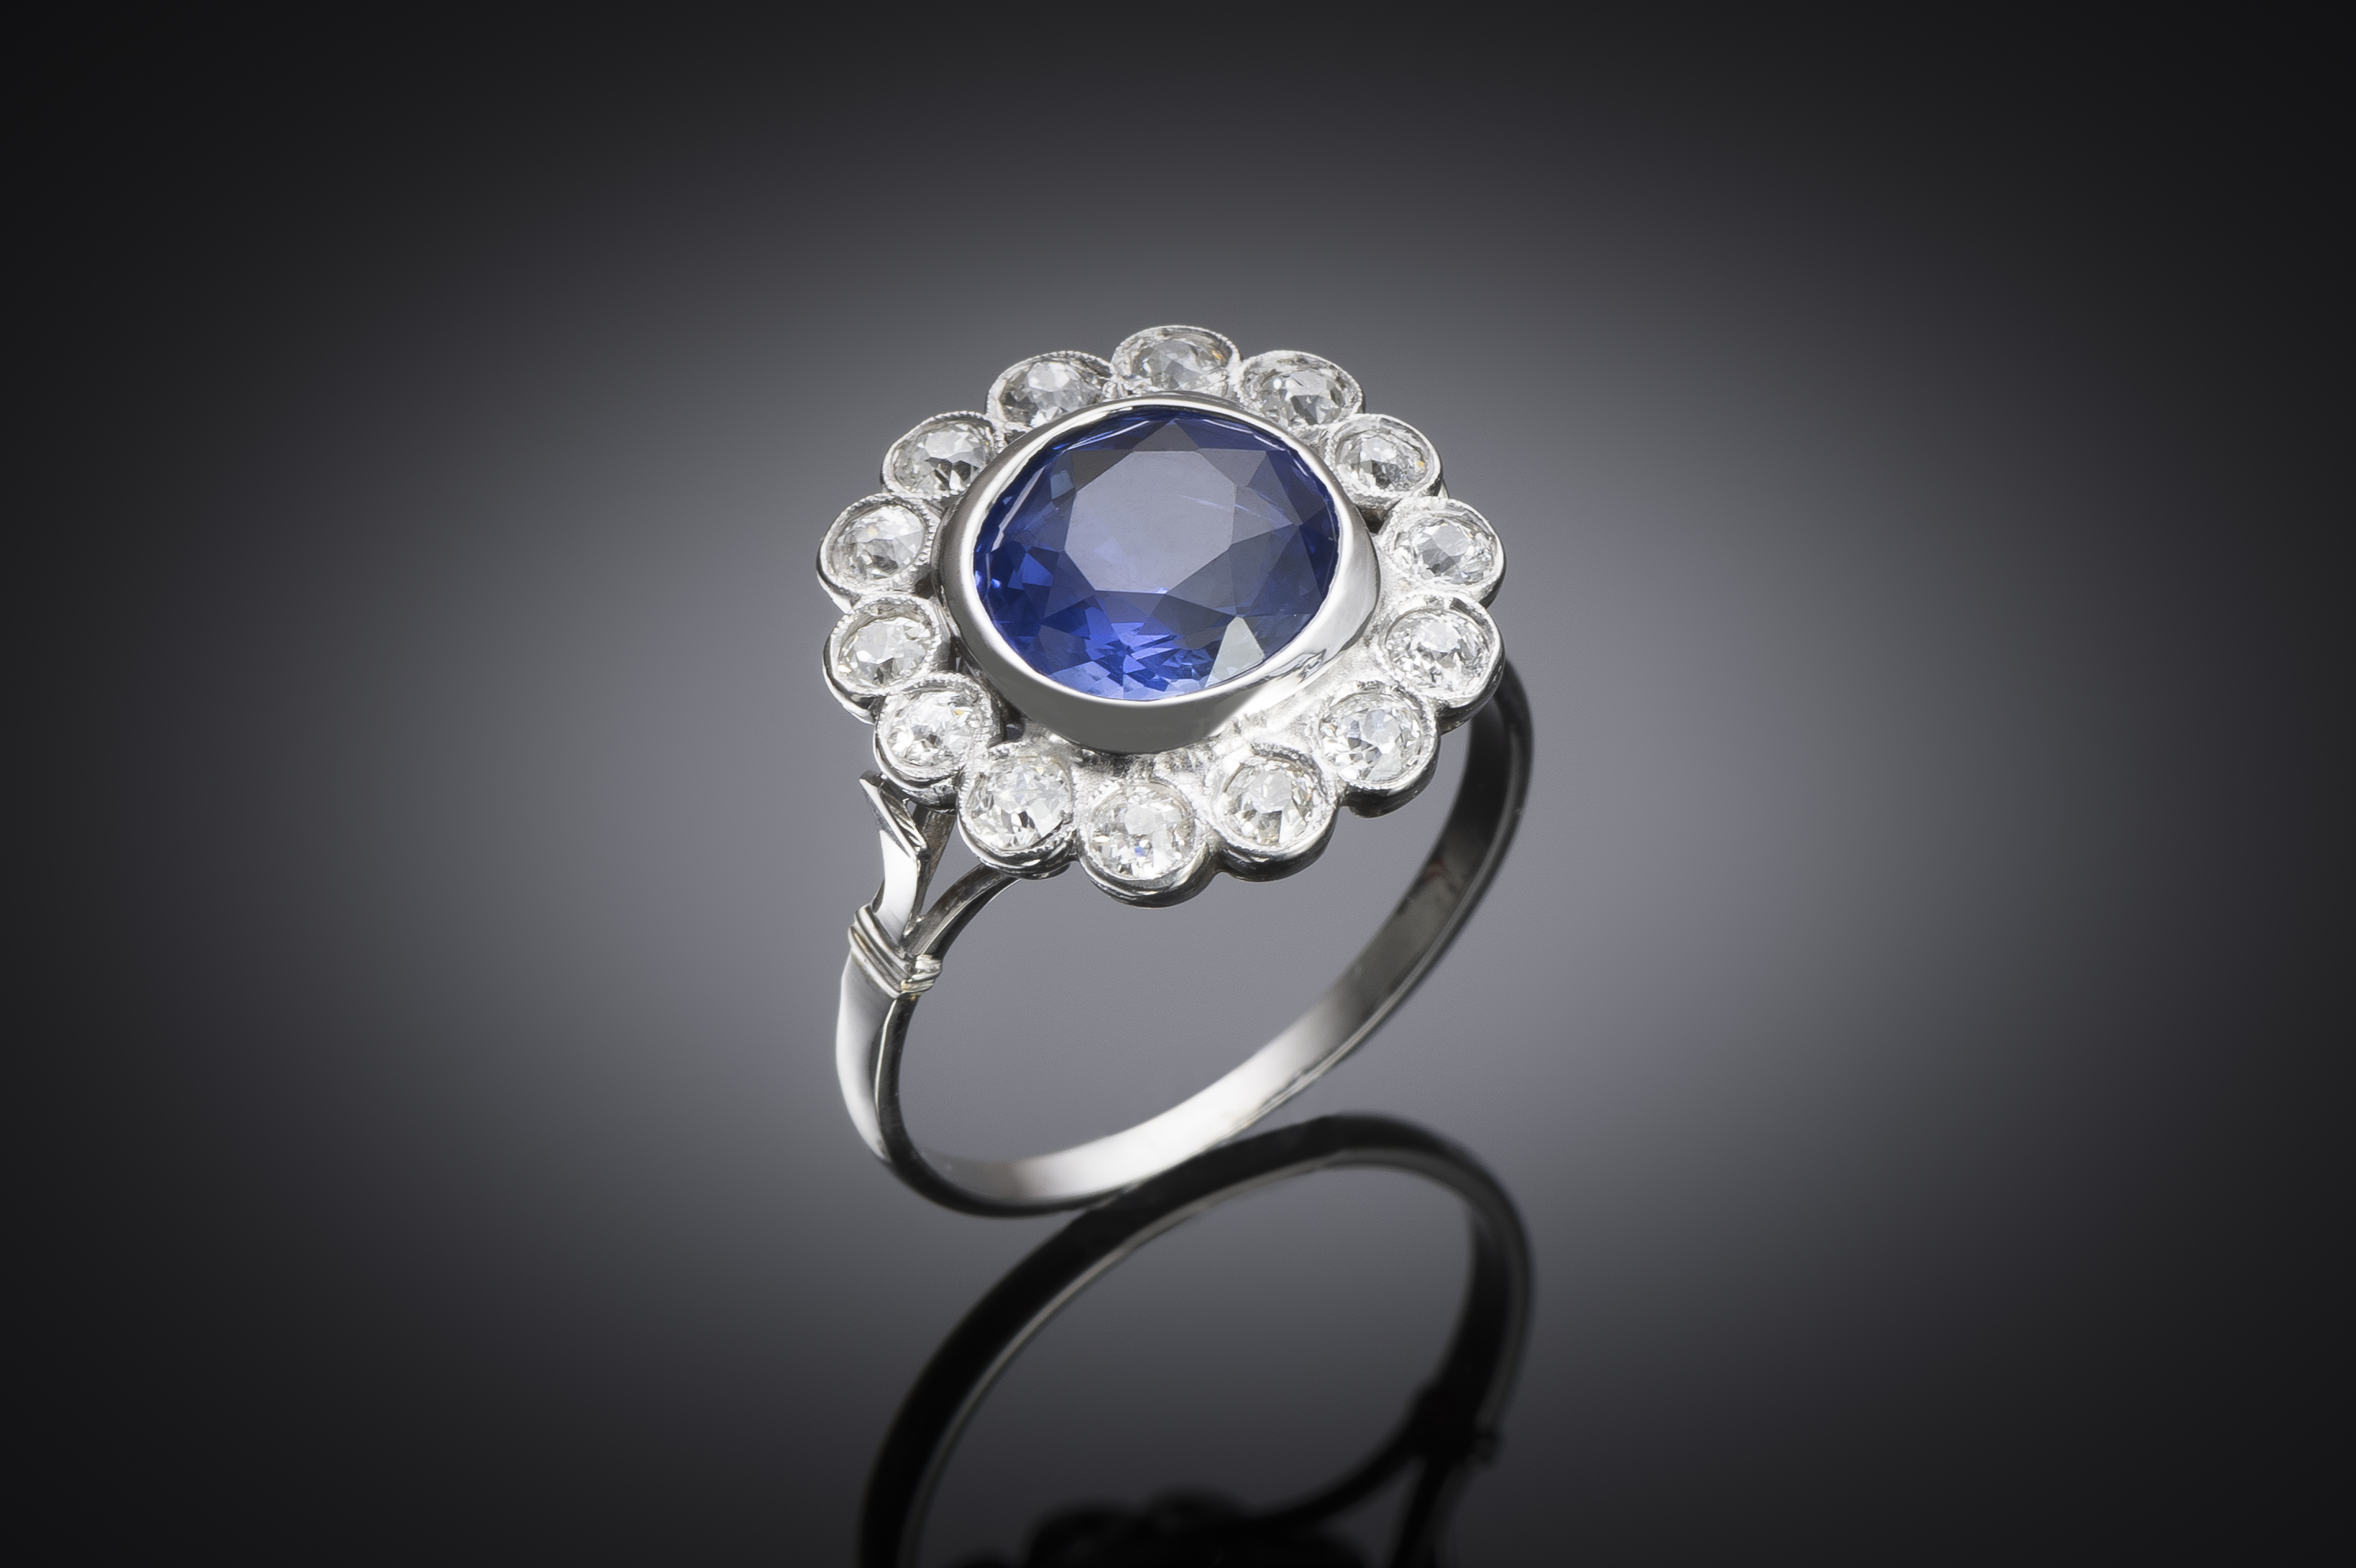 Bague Art déco vers 1930, saphir naturel non chauffé bleu intense de 3,47 carats (certificat laboratoire) et diamants taille ancienne-1